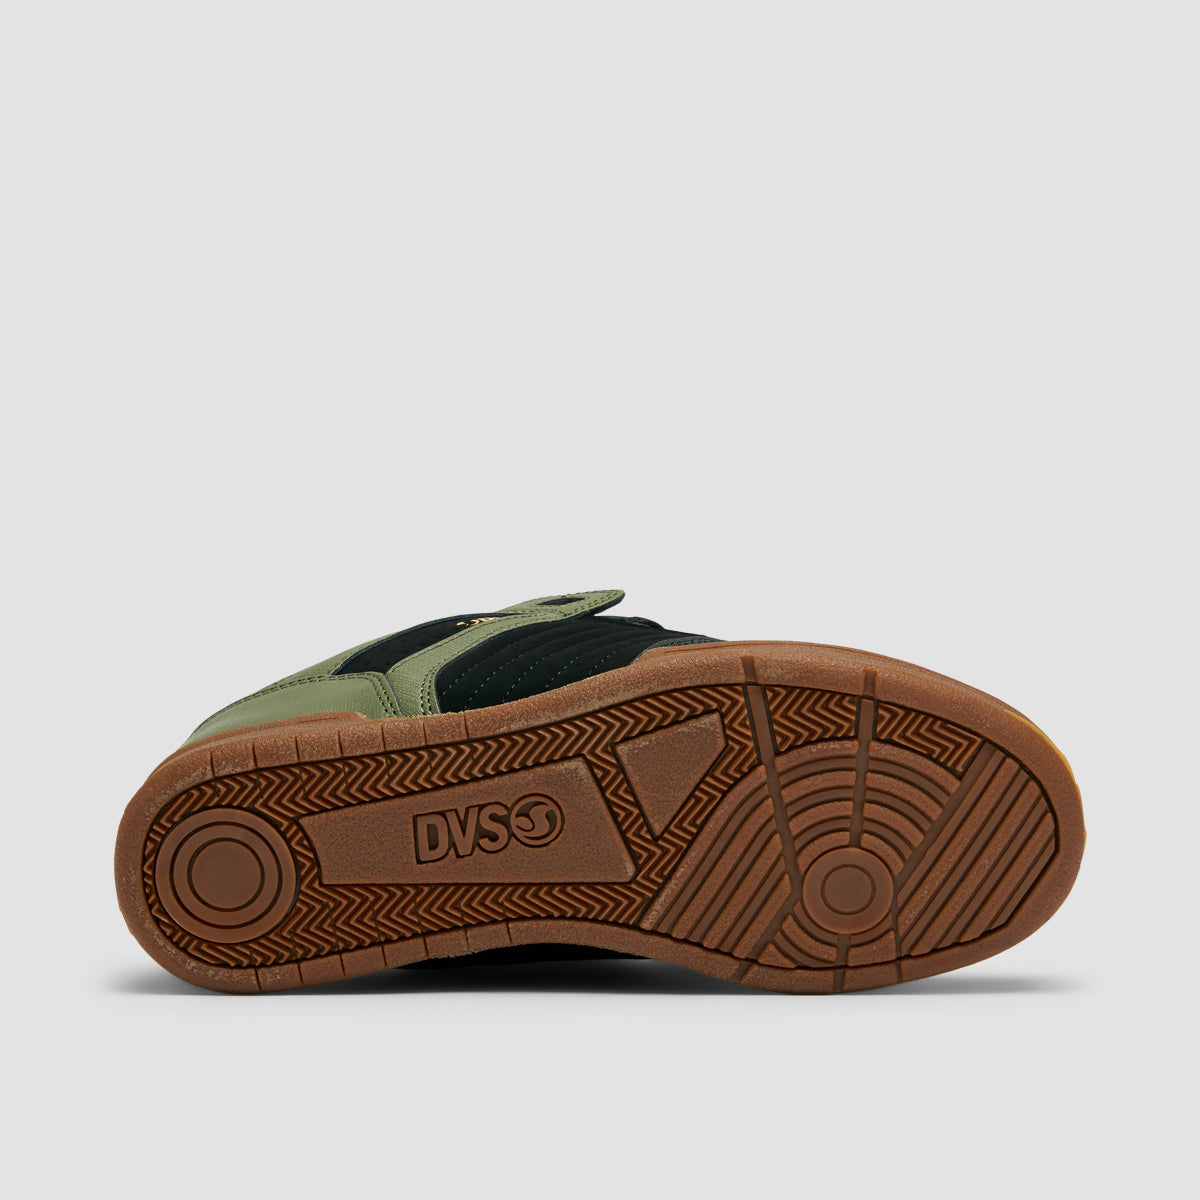 DVS Celsius Shoes - Black/Olive/Gum Nubuck